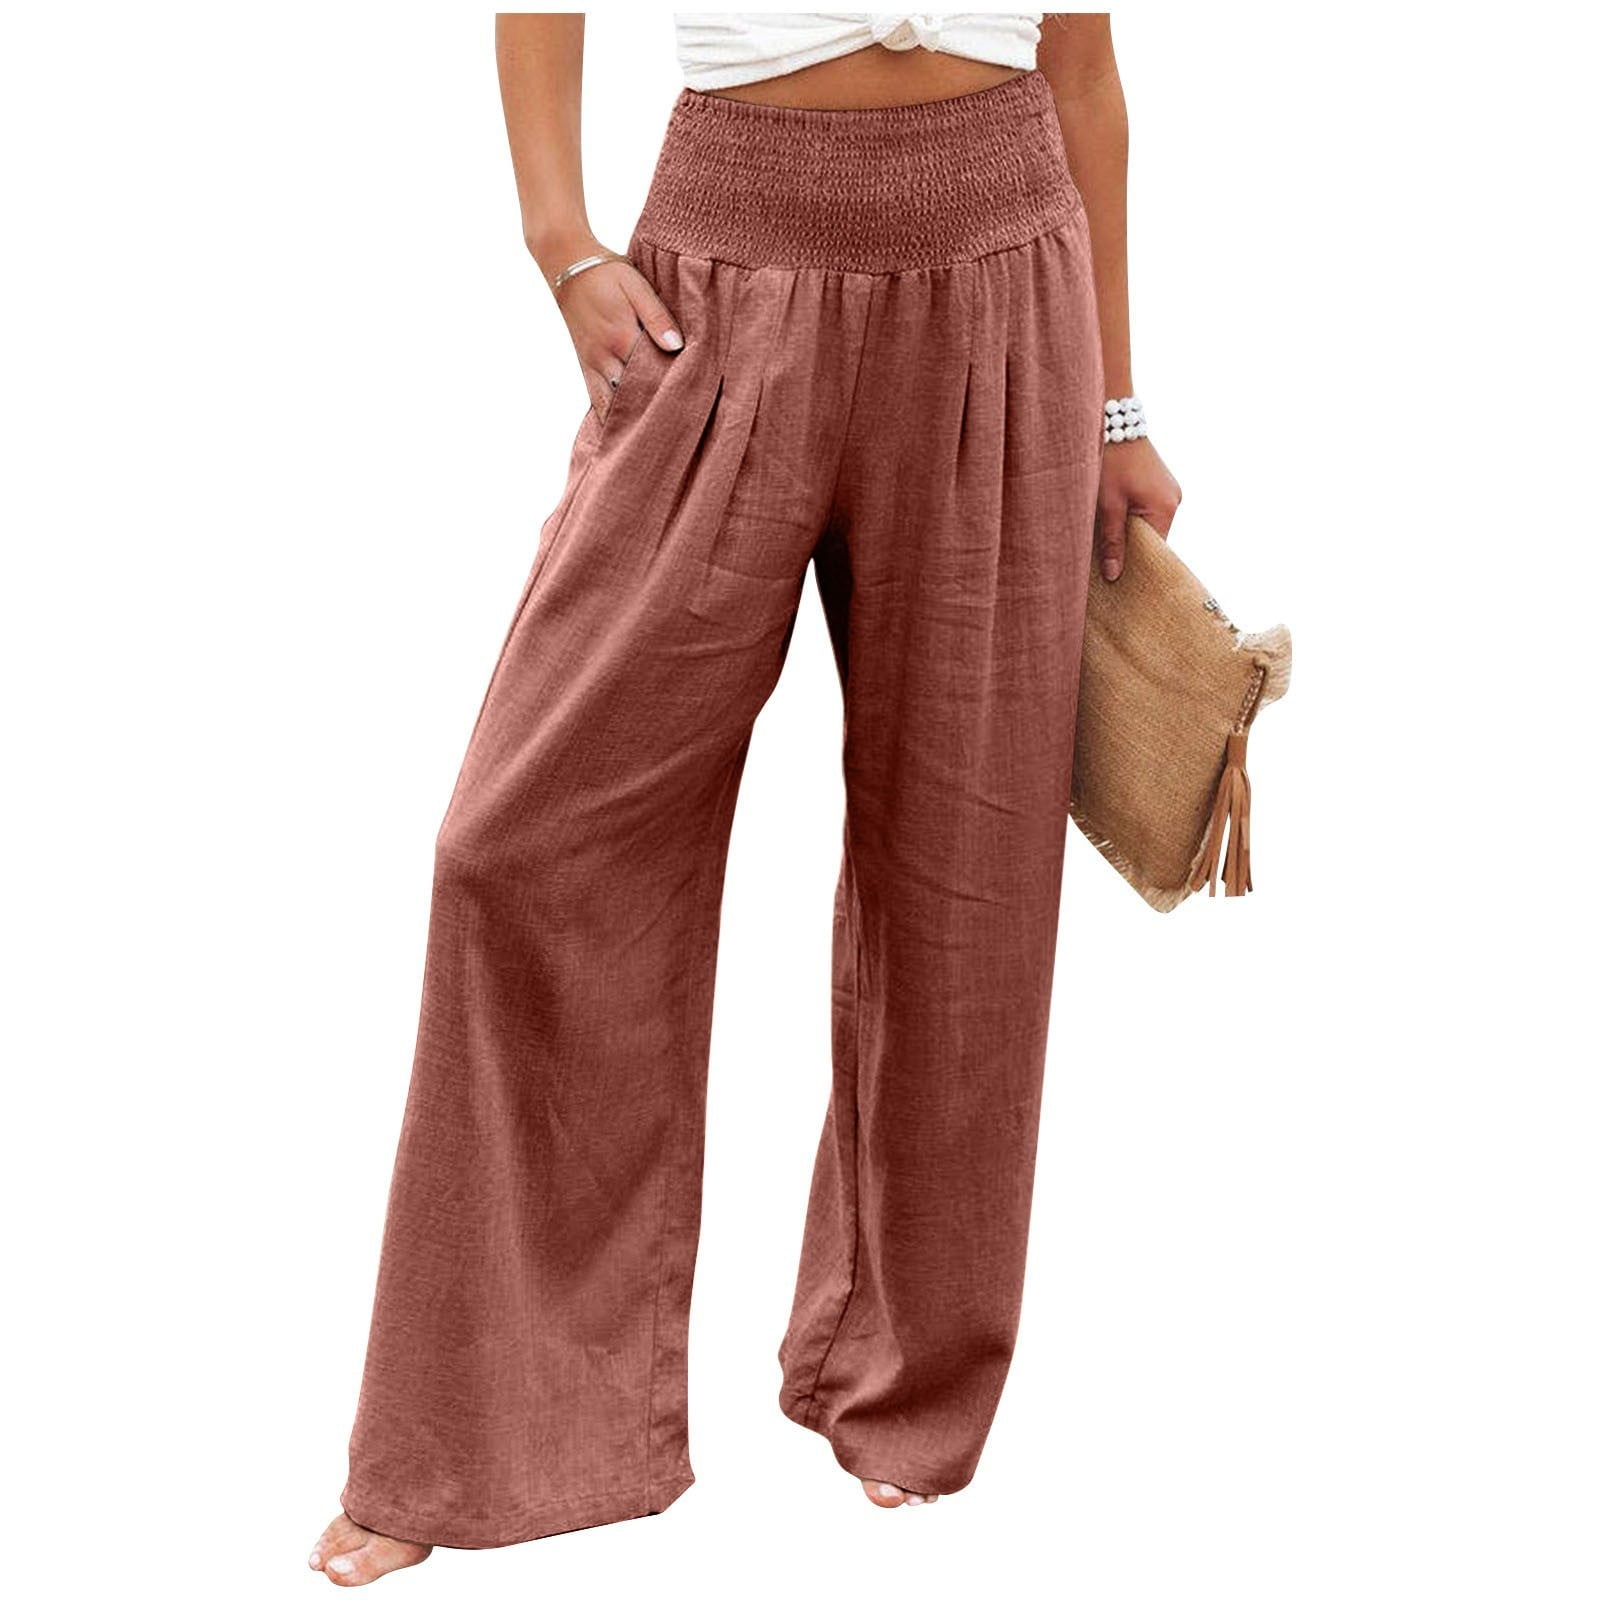 Hfyihgf Womens Wide Leg Palazzo Lounge Pants High Waist Smocked Beach Pants  Linen Casual Ruffle Hem Trousers(Pink,XL) 